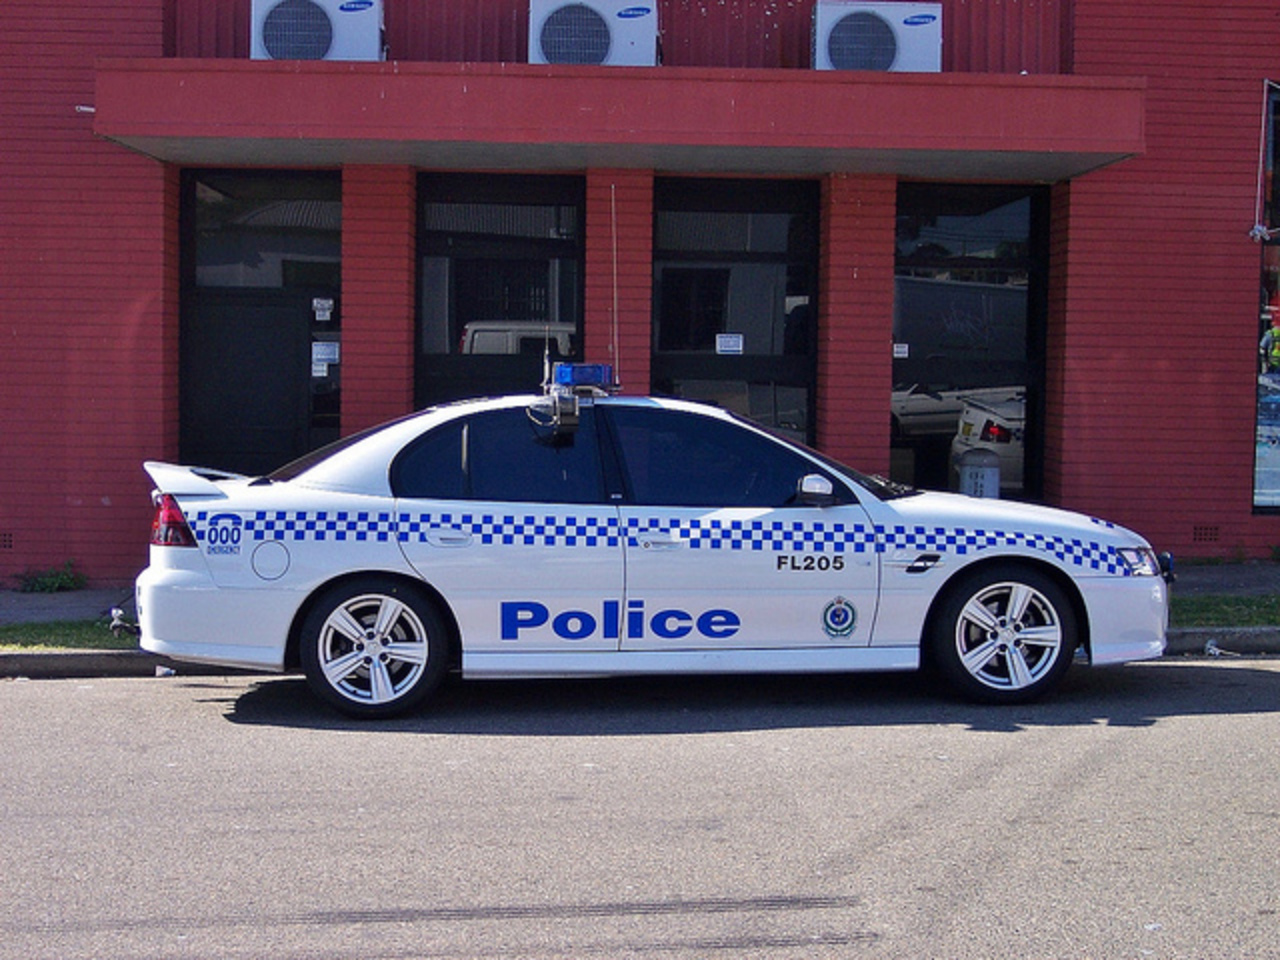 2004 Holden VZ Commodore SS - Police de Nouvelle-Galles du Sud | Flickr - Partage de photos!